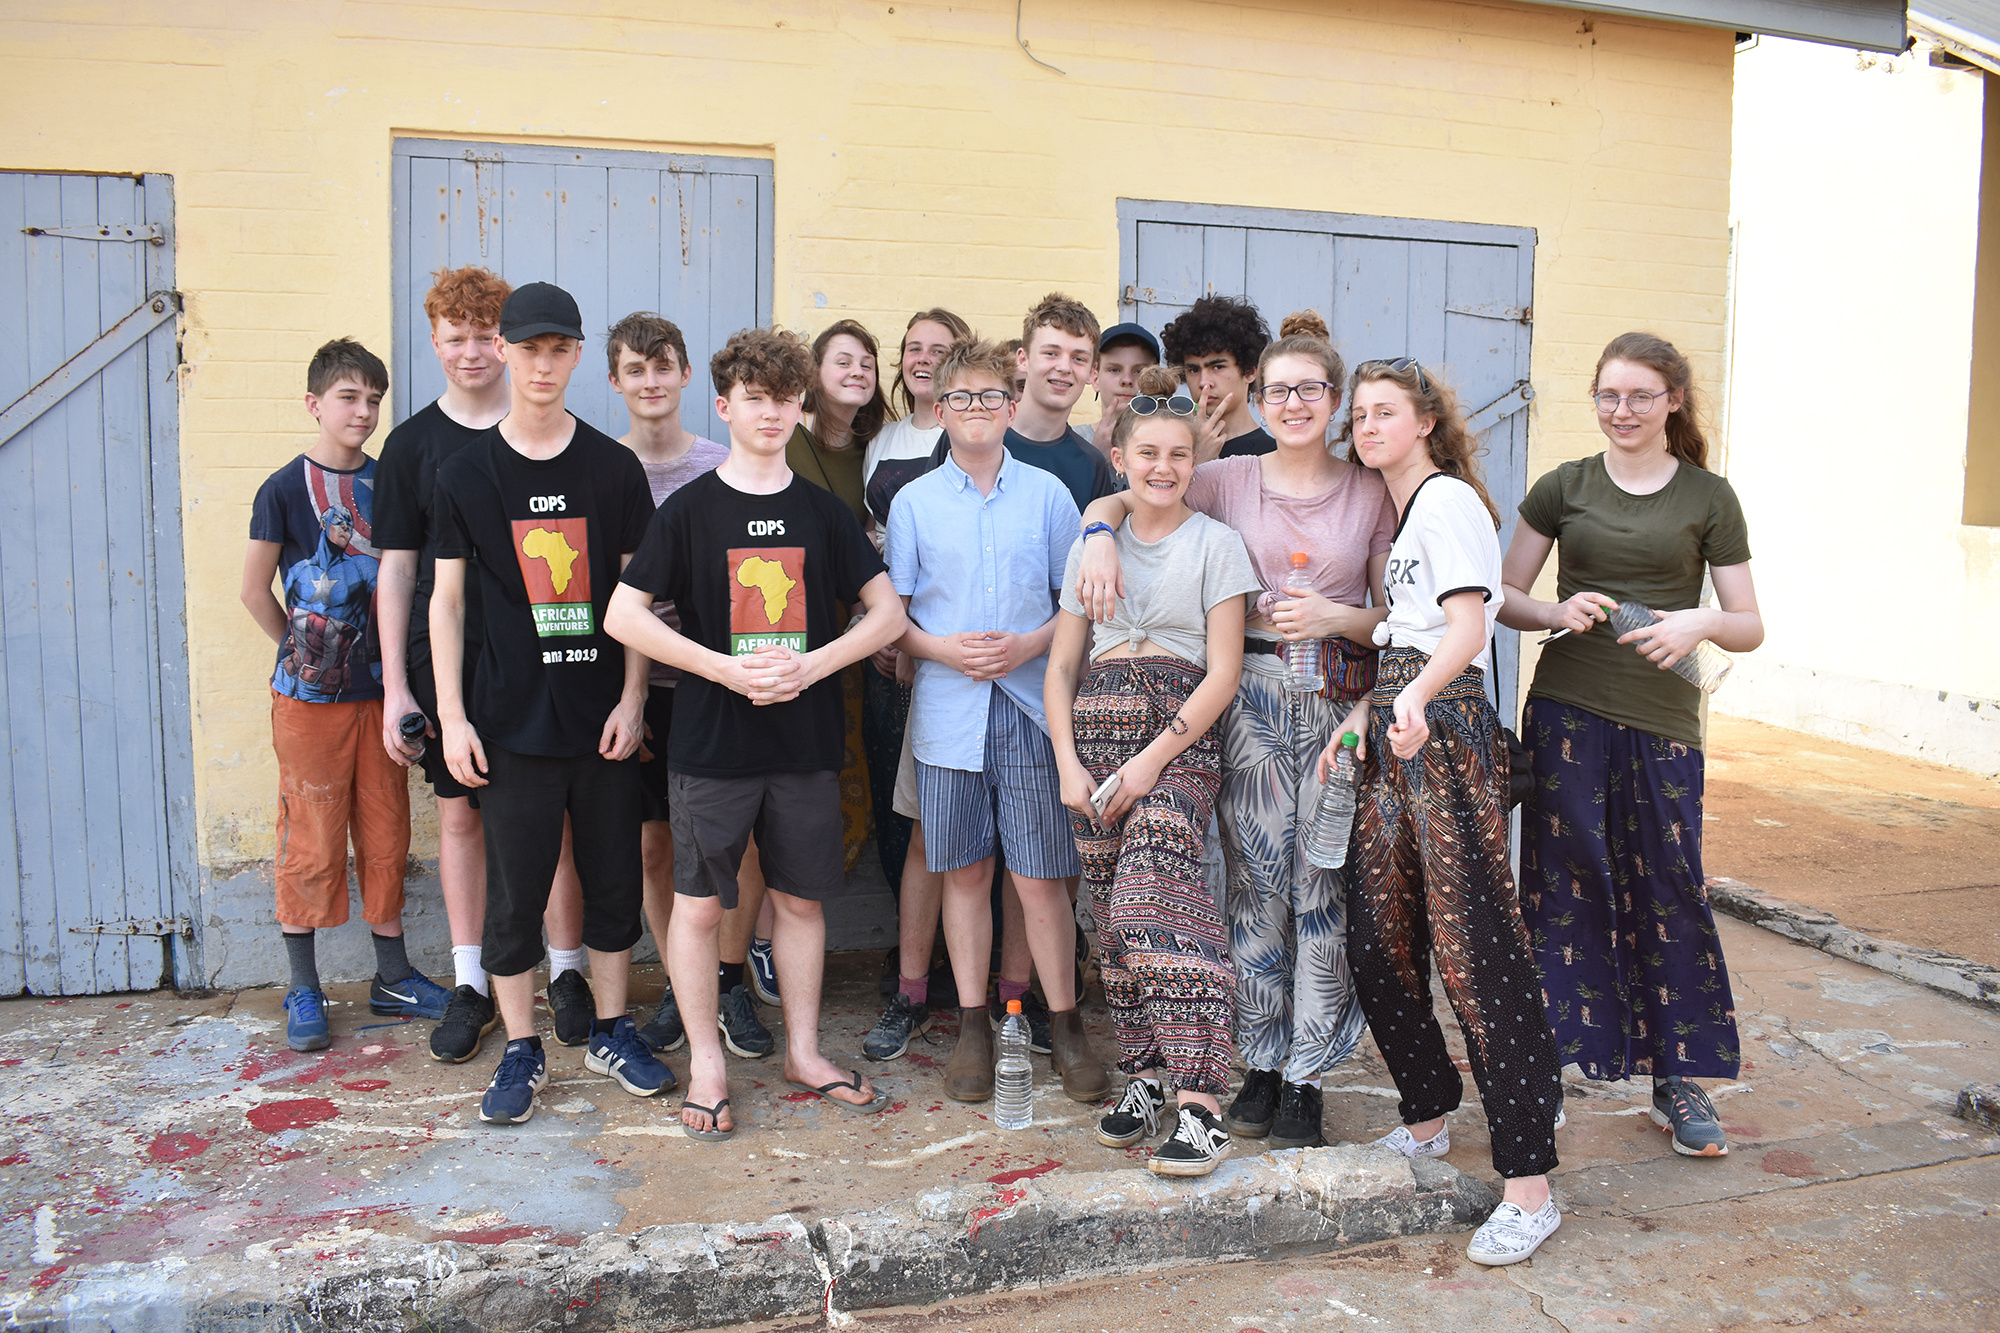 Ghana 2019 volunteer trip